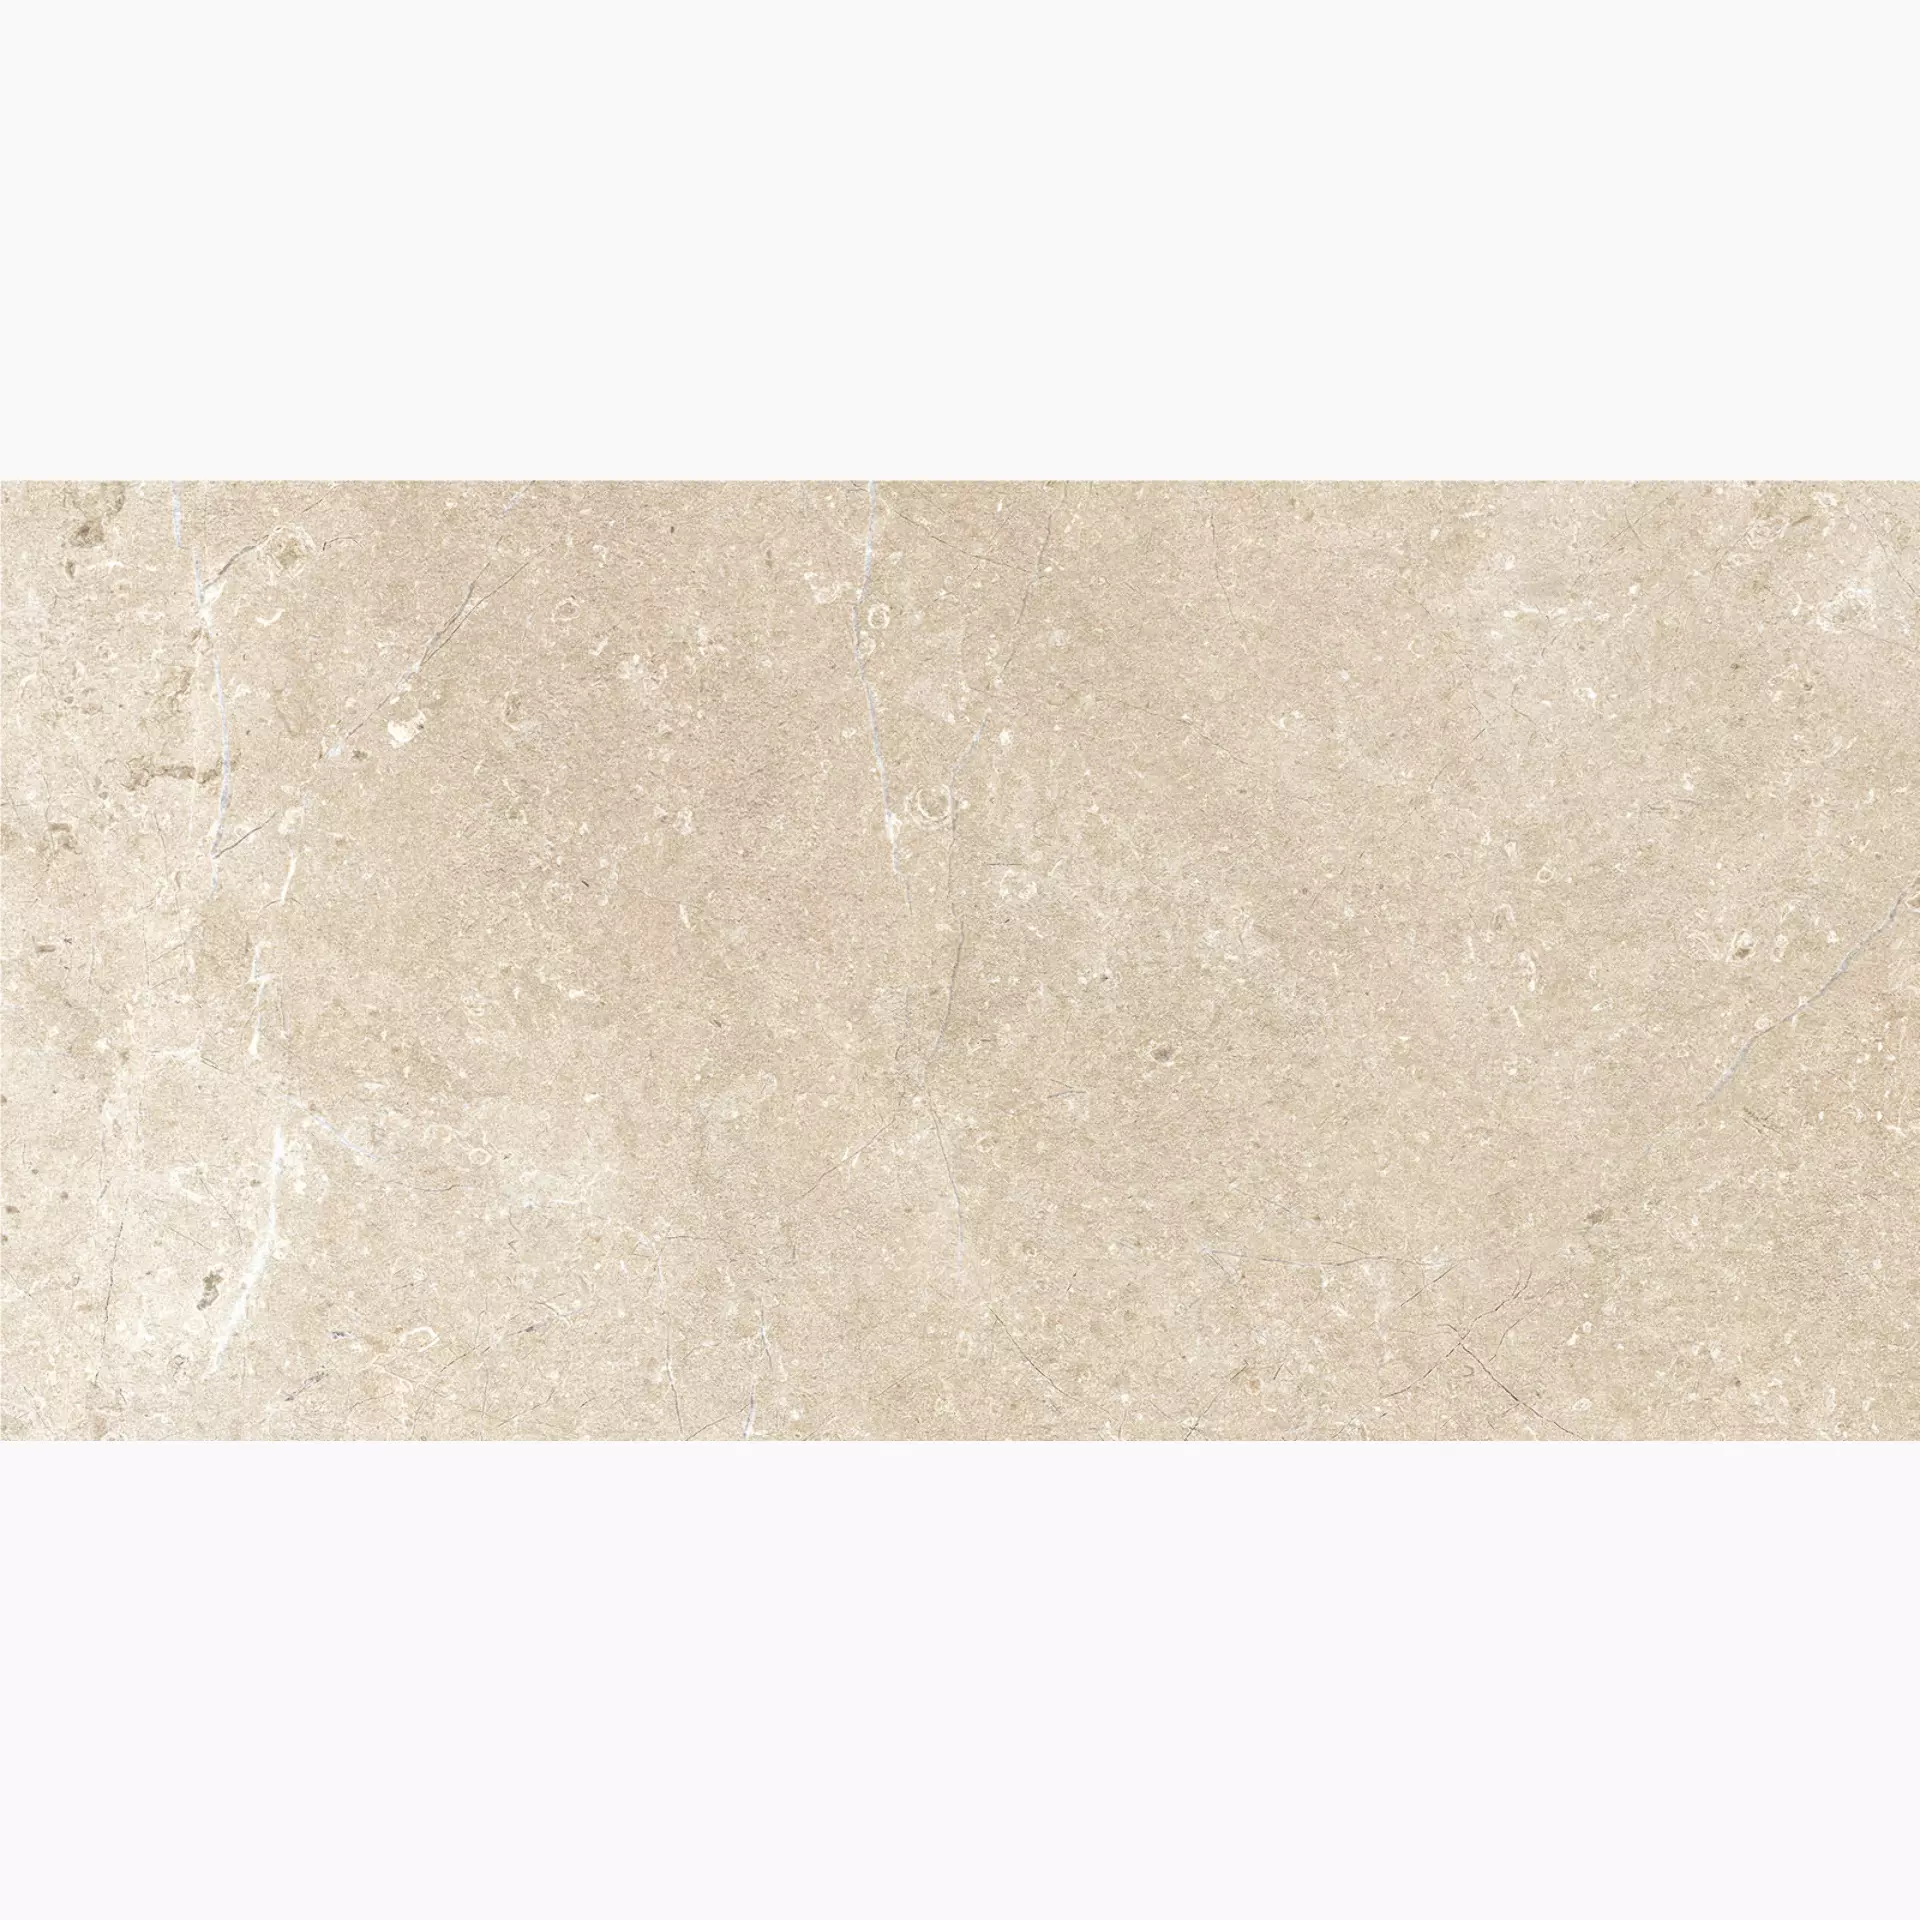 Bodenfliese,Wandfliese Marazzi Mystone Limestone Sand Naturale – Matt Sand M7EJ matt natur 30x60cm rektifiziert 10mm